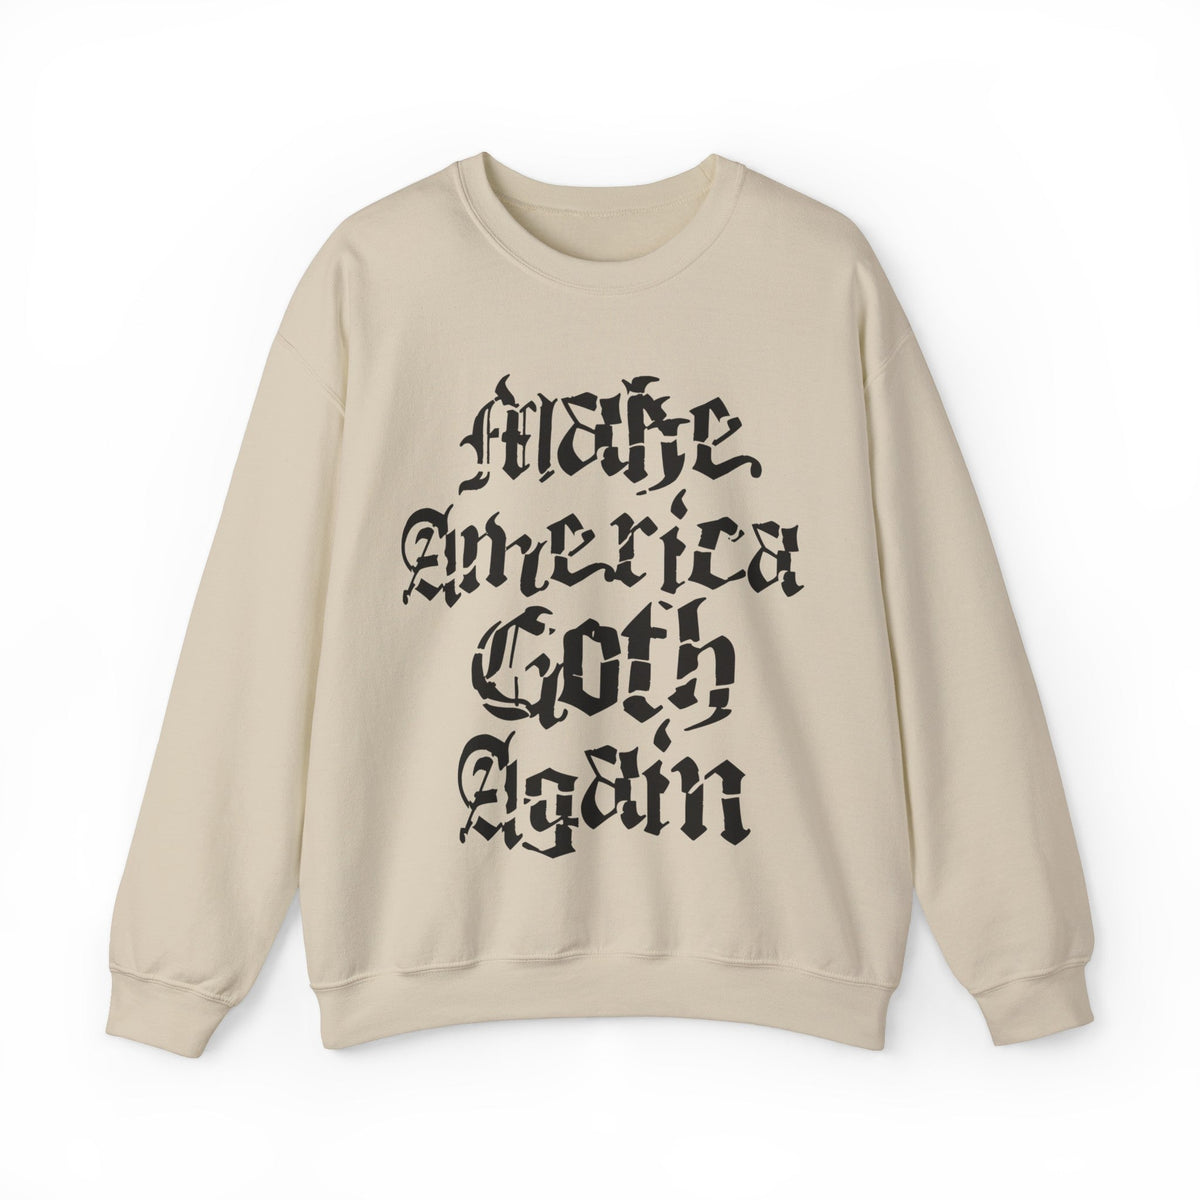 Make America Goth Again Crewneck Sweatshirt - Goth Cloth Co.Sweatshirt29203808005812298795